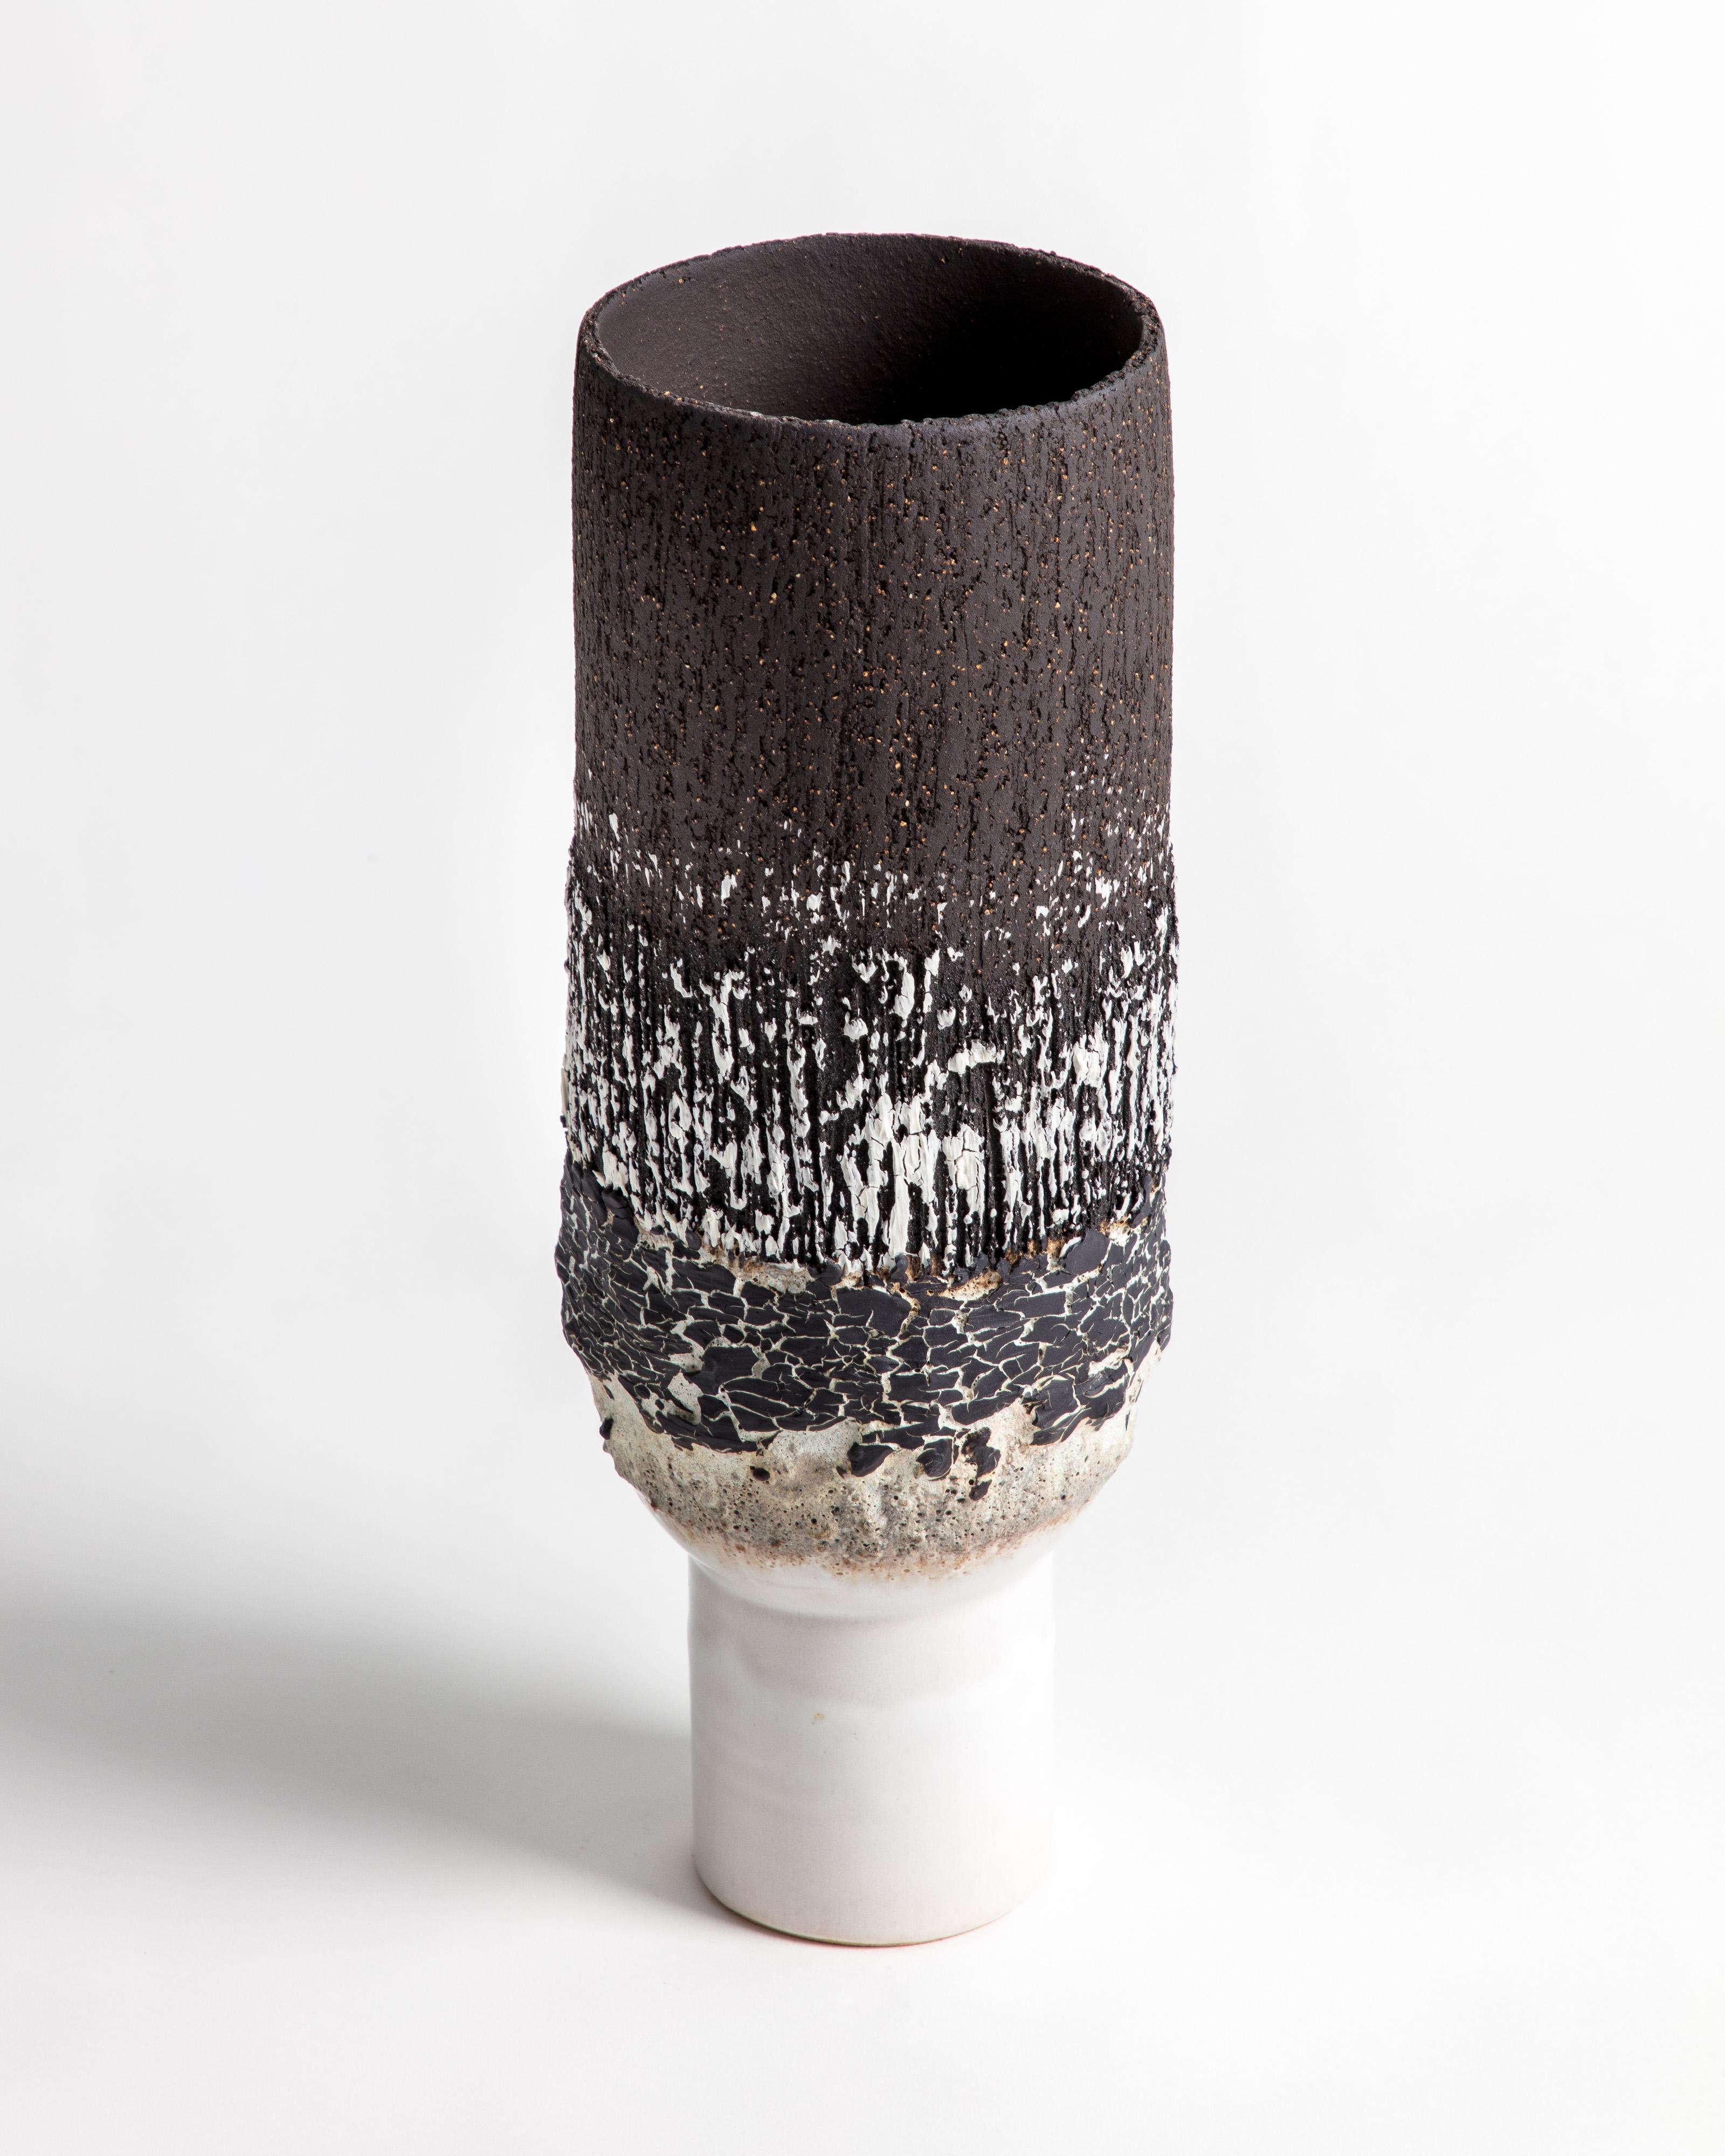 Un élégant vase à piédestal volcanique en grès noir et blanc avec engobe en porcelaine craquelée noire.

L'inspiration pour la pièce vient de l'argile elle-même et des relations chimiques que la glaçure et la matière volcanique créent. Voyages